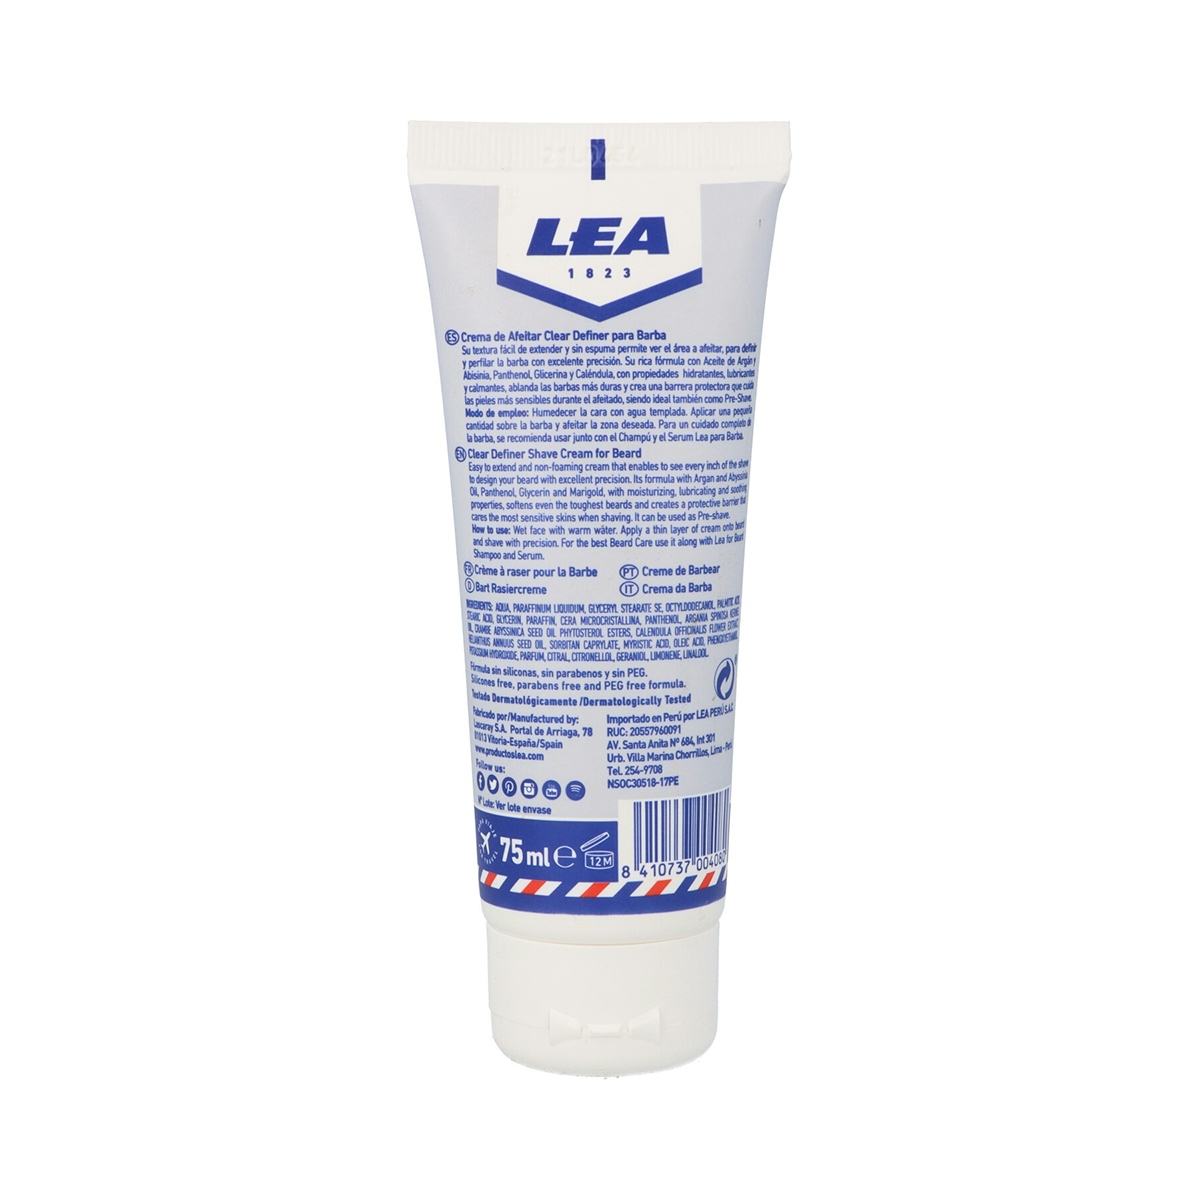 crema de afeitar clear definer LEA formato viaje tubo 75 ml